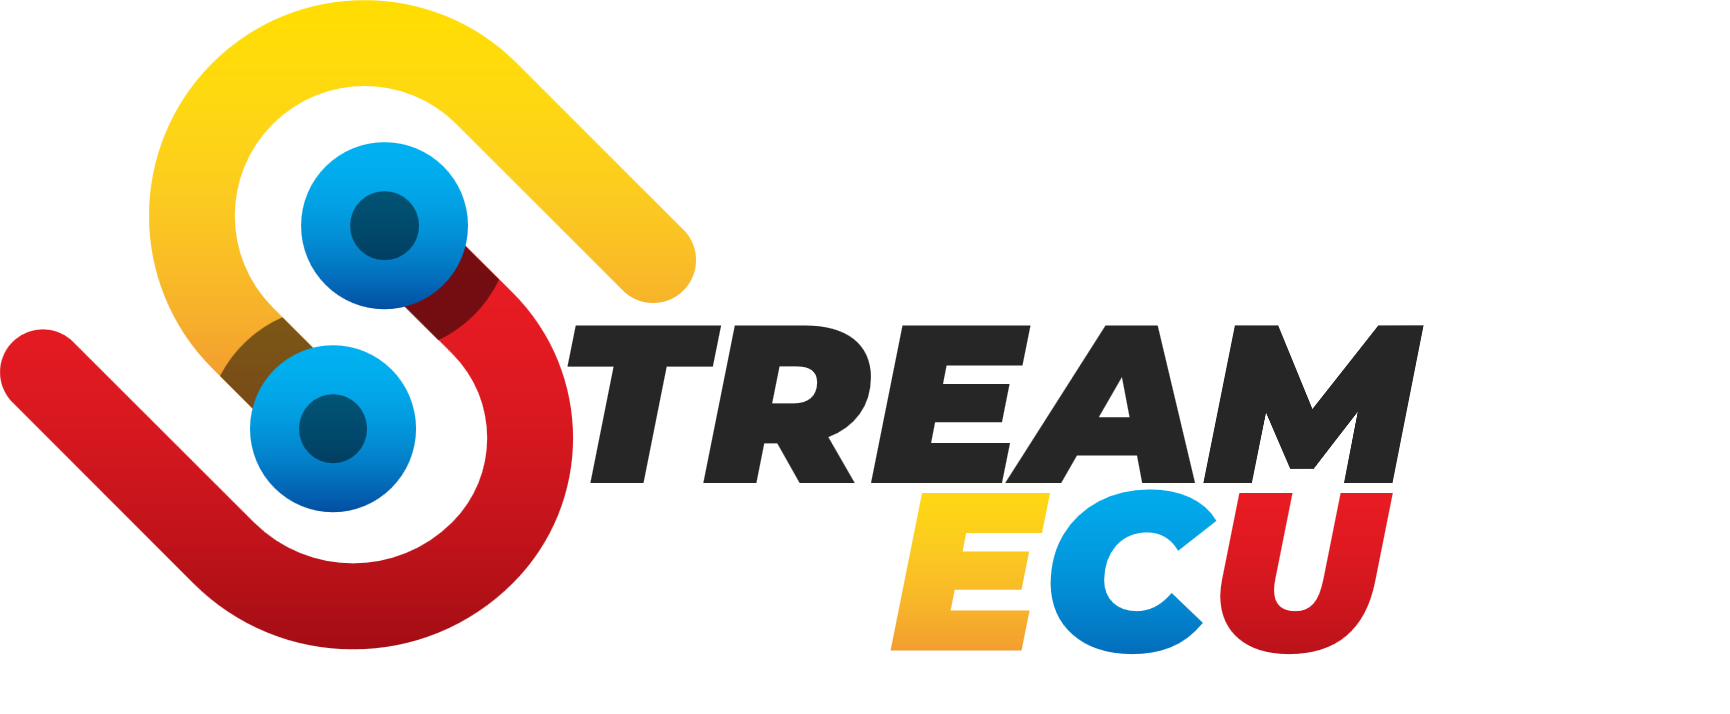 Stream Ecu Latam - Tienda Ecommerce